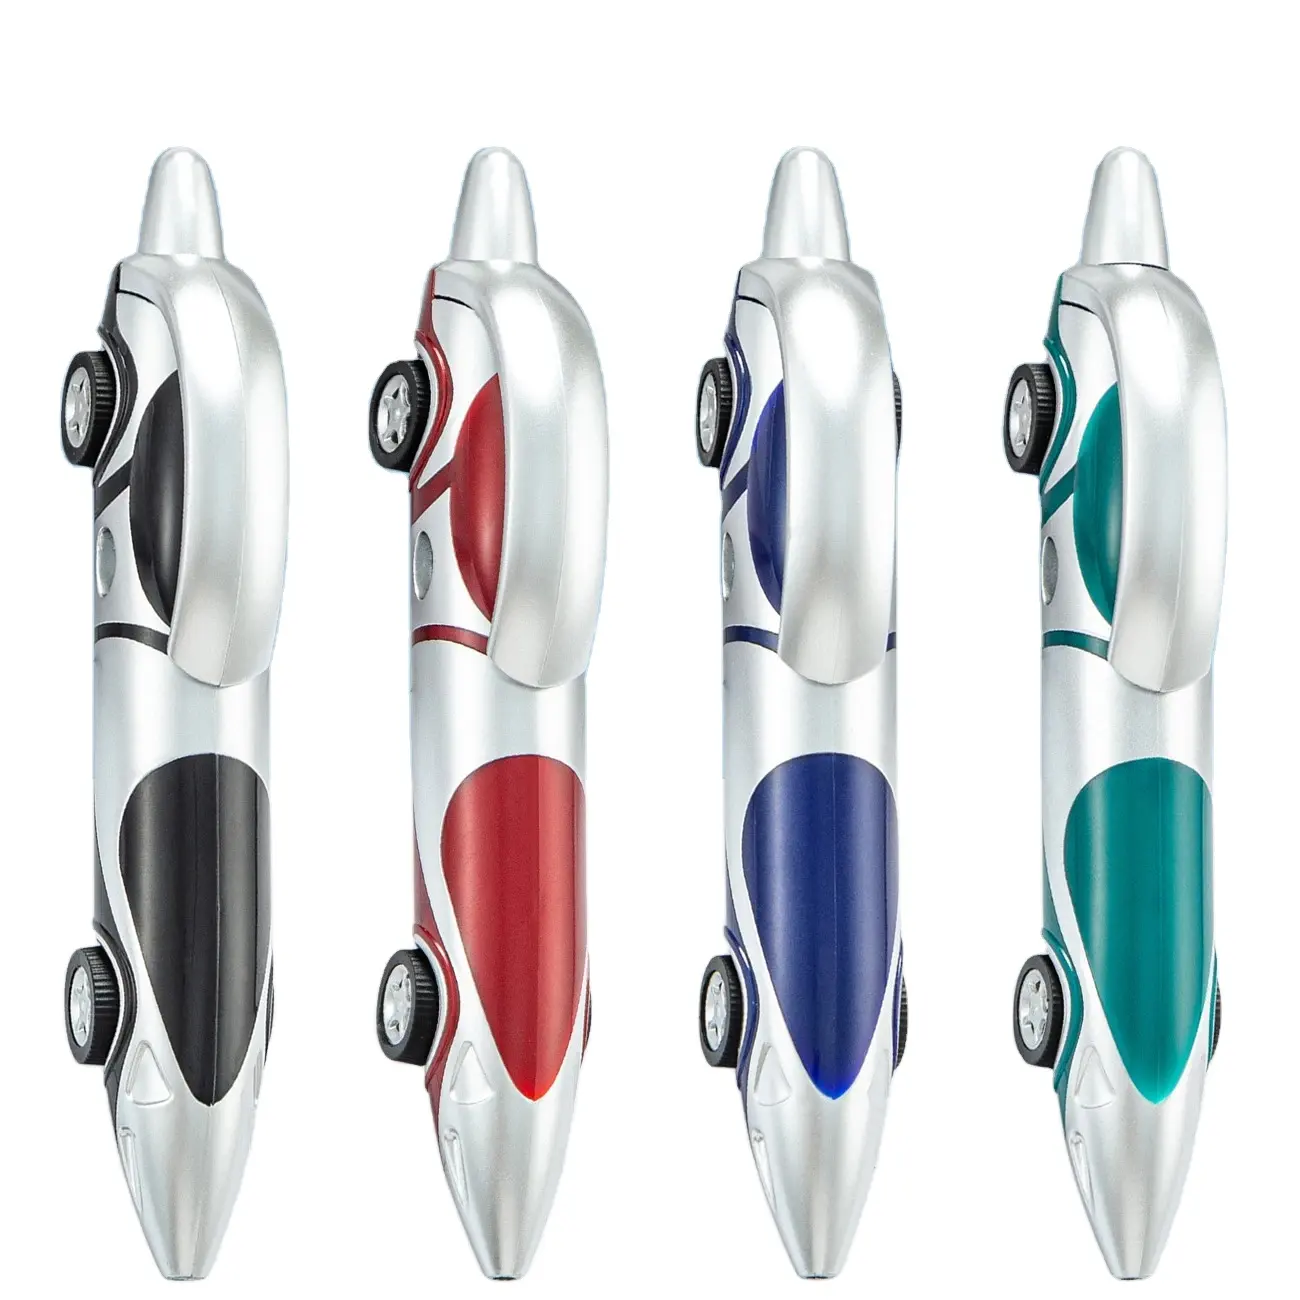 MEGA échantillon gratuit de haute qualité Business Sports Racer Car stylo à bille Cool stylos drôles pour les enfants